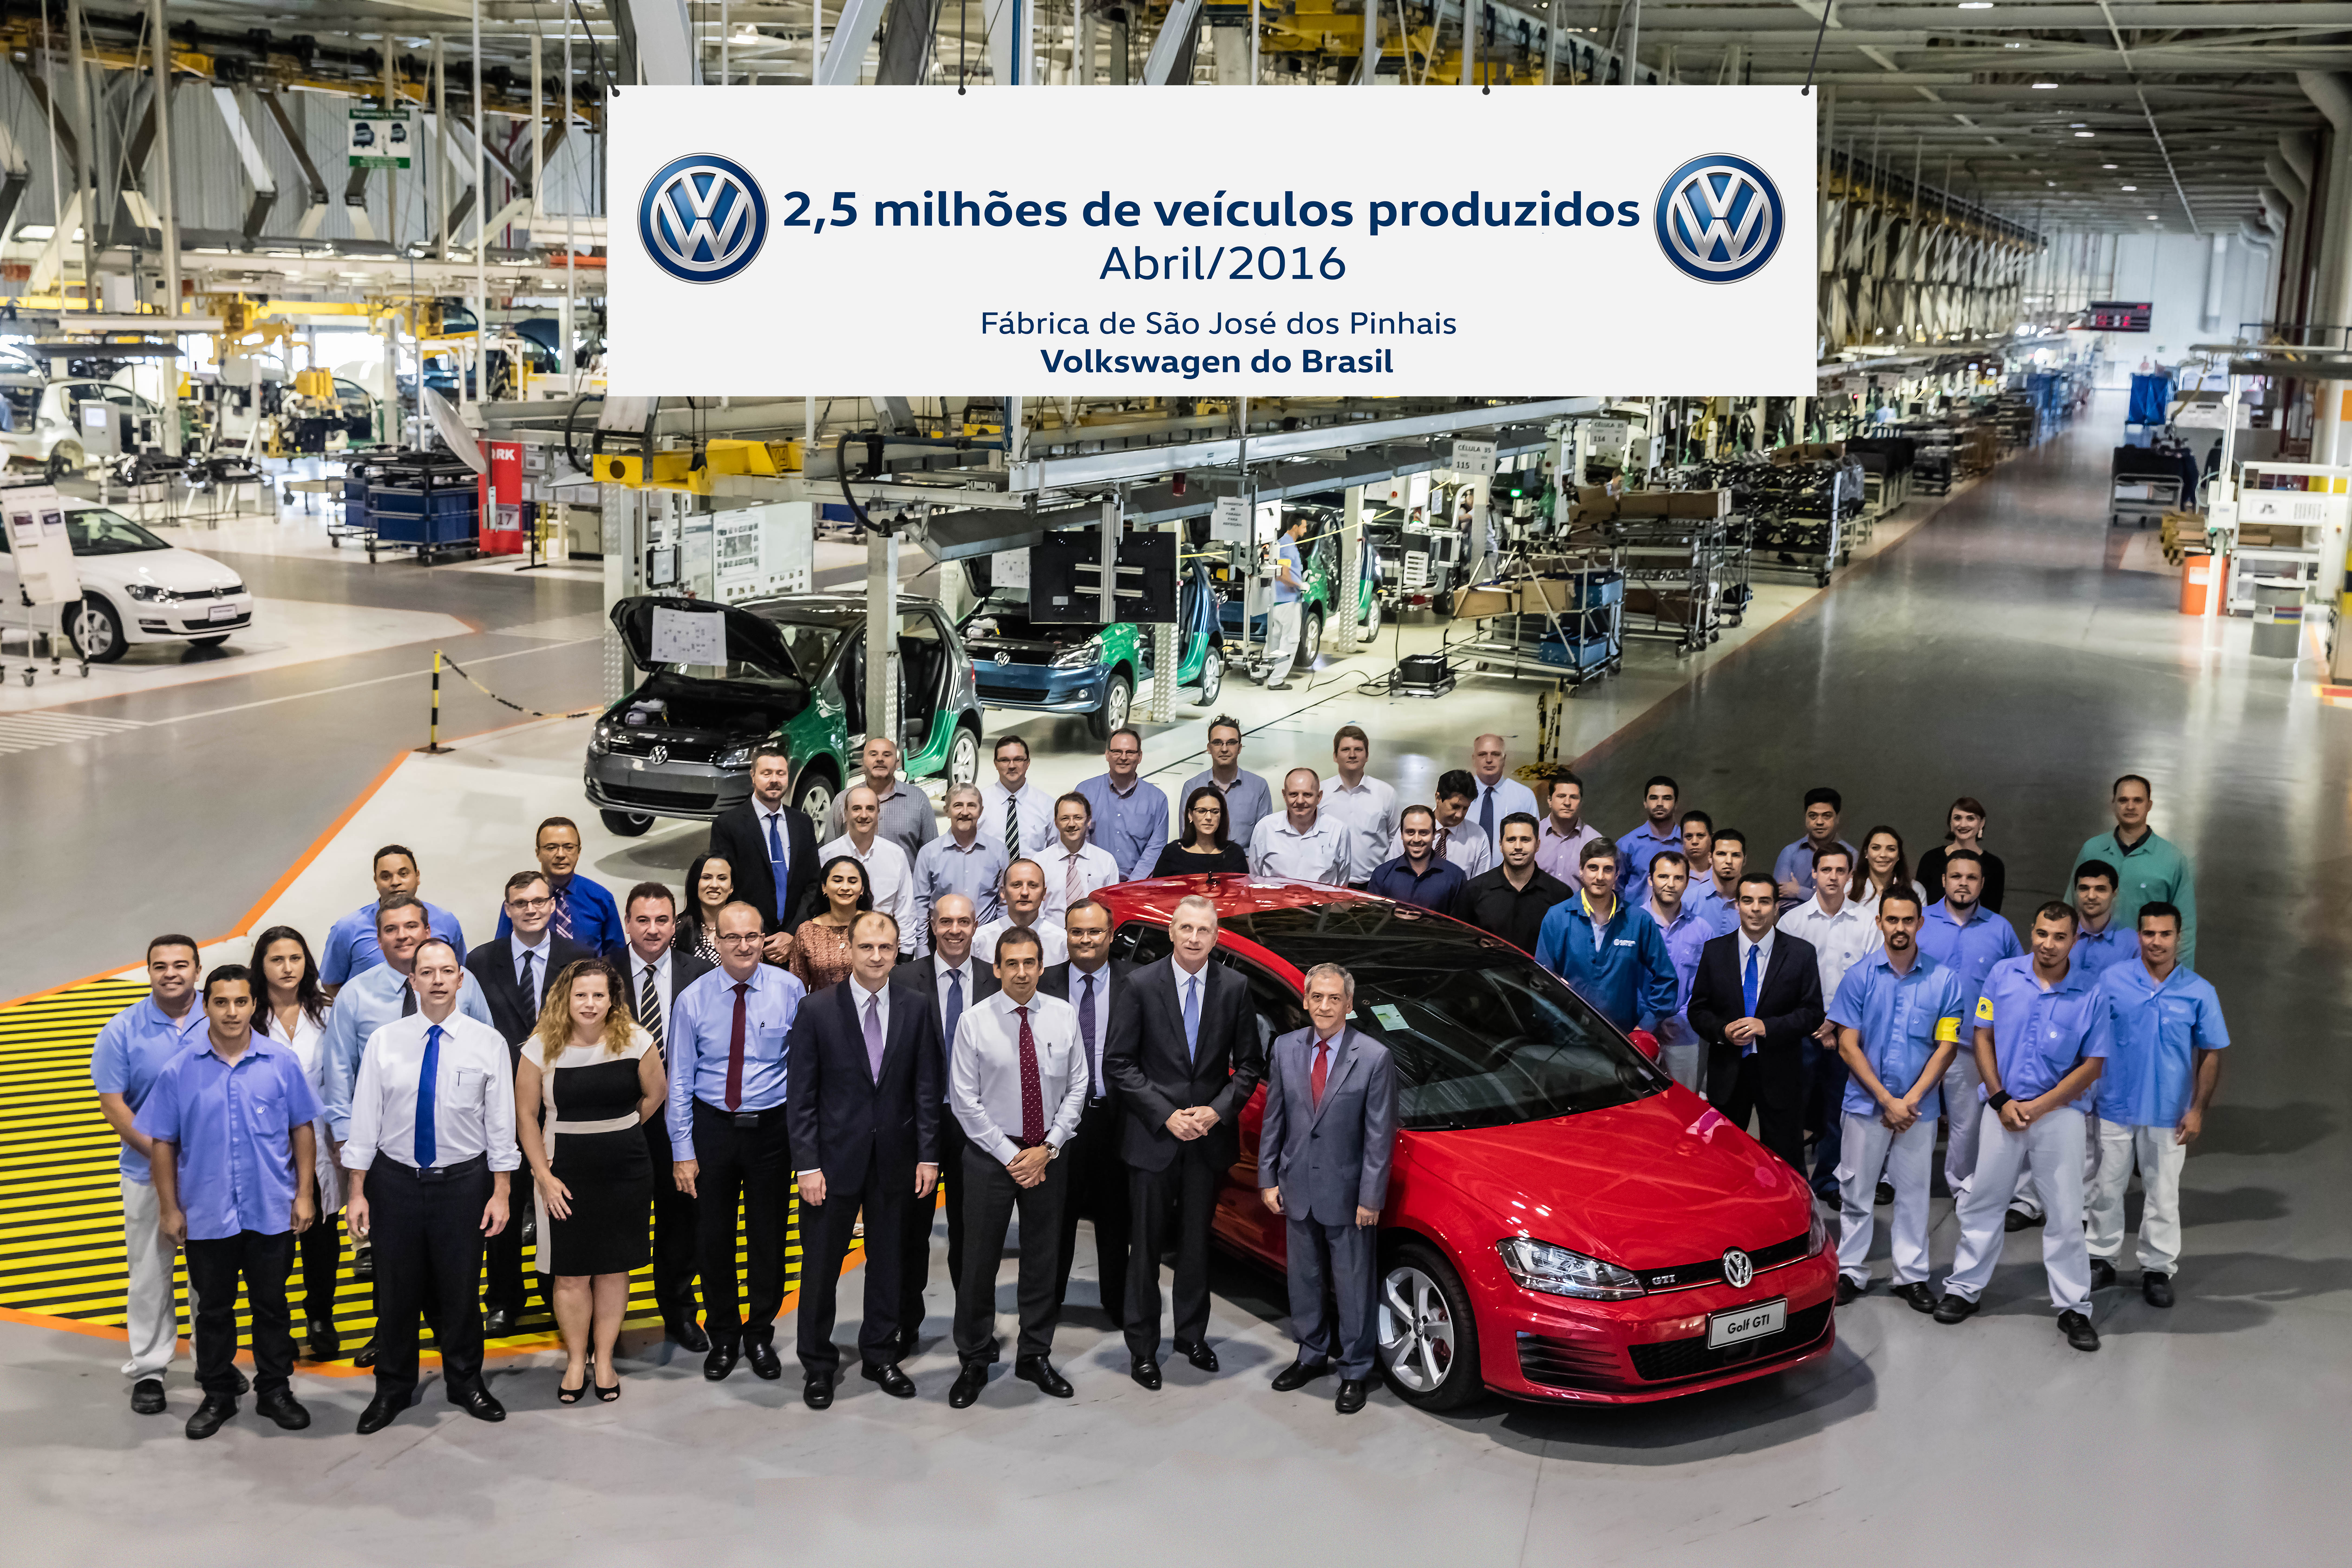 Fábrica da Volkswagen do Brasil em São José dos Pinhais comemora o marco de 2,5 milhões de veículos produzidos